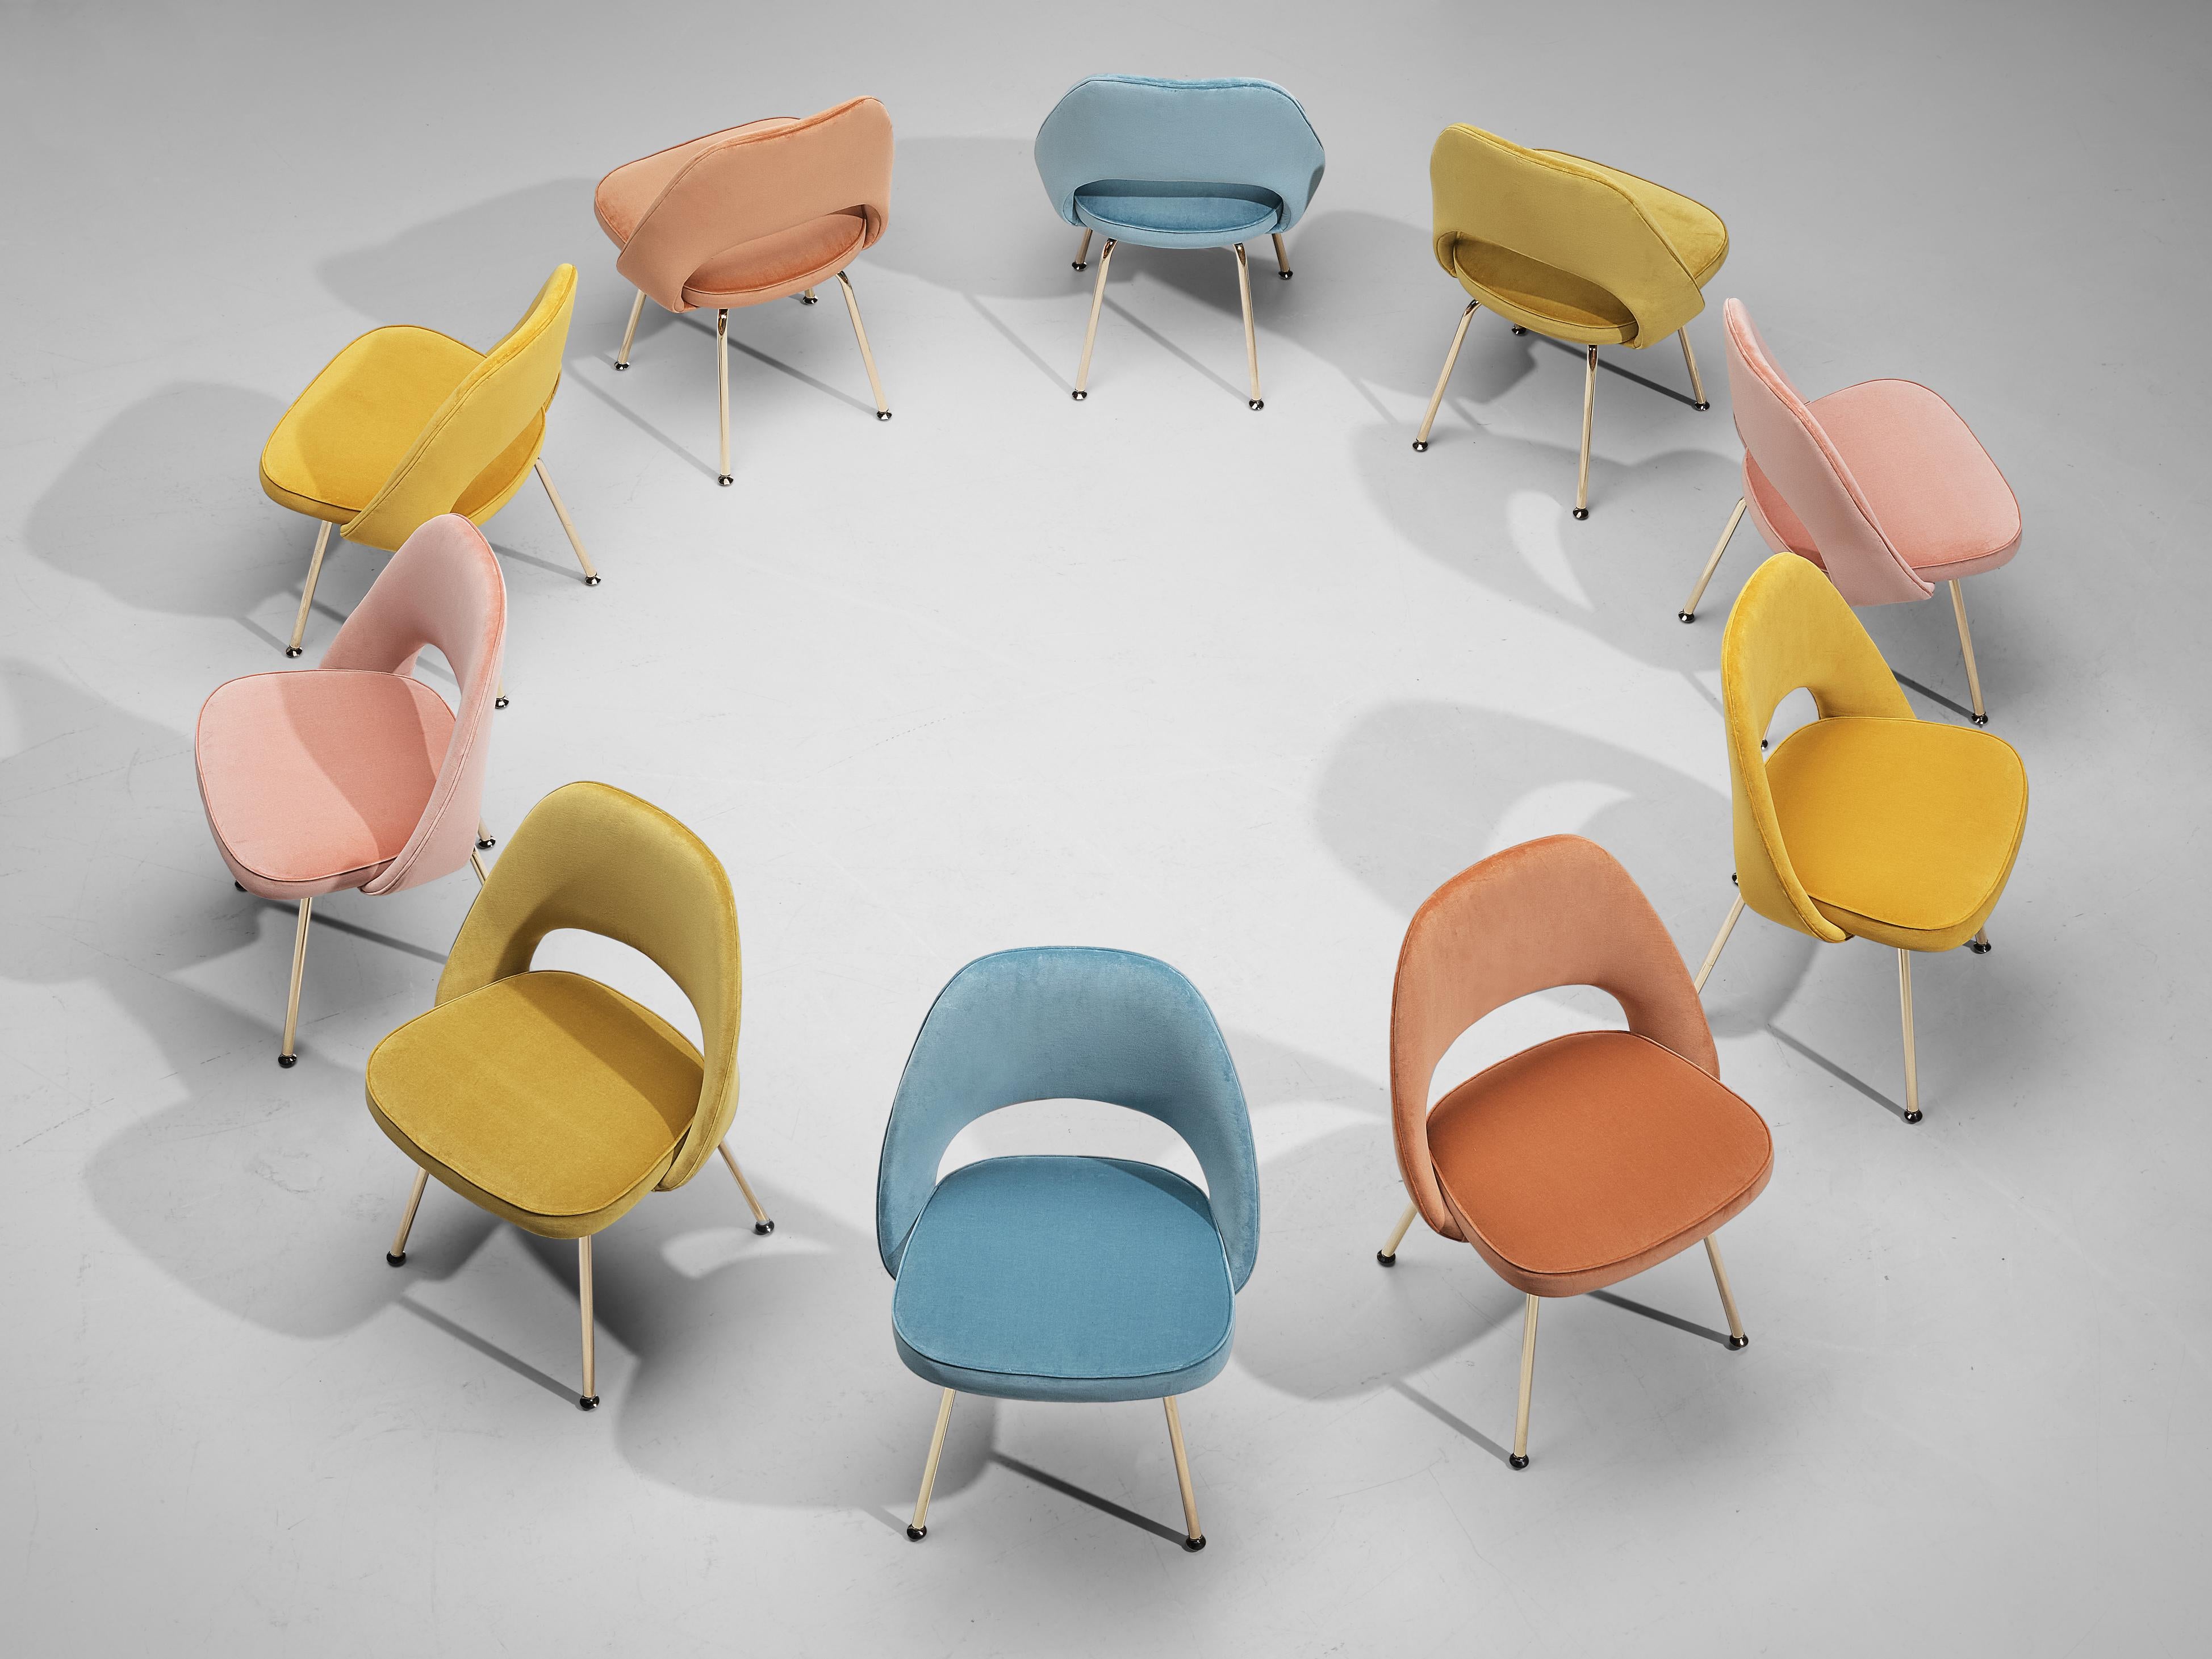 Eero Saarinen für Knoll, Satz von zehn Esszimmerstühlen, Modell 72, messingbeschichteter Stahl, Samtpolsterung, Vereinigte Staaten, Entwurf 1948

Satz organisch geformter Stühle, entworfen von Eero Saarinen. Dieses ikonische Modell ist in